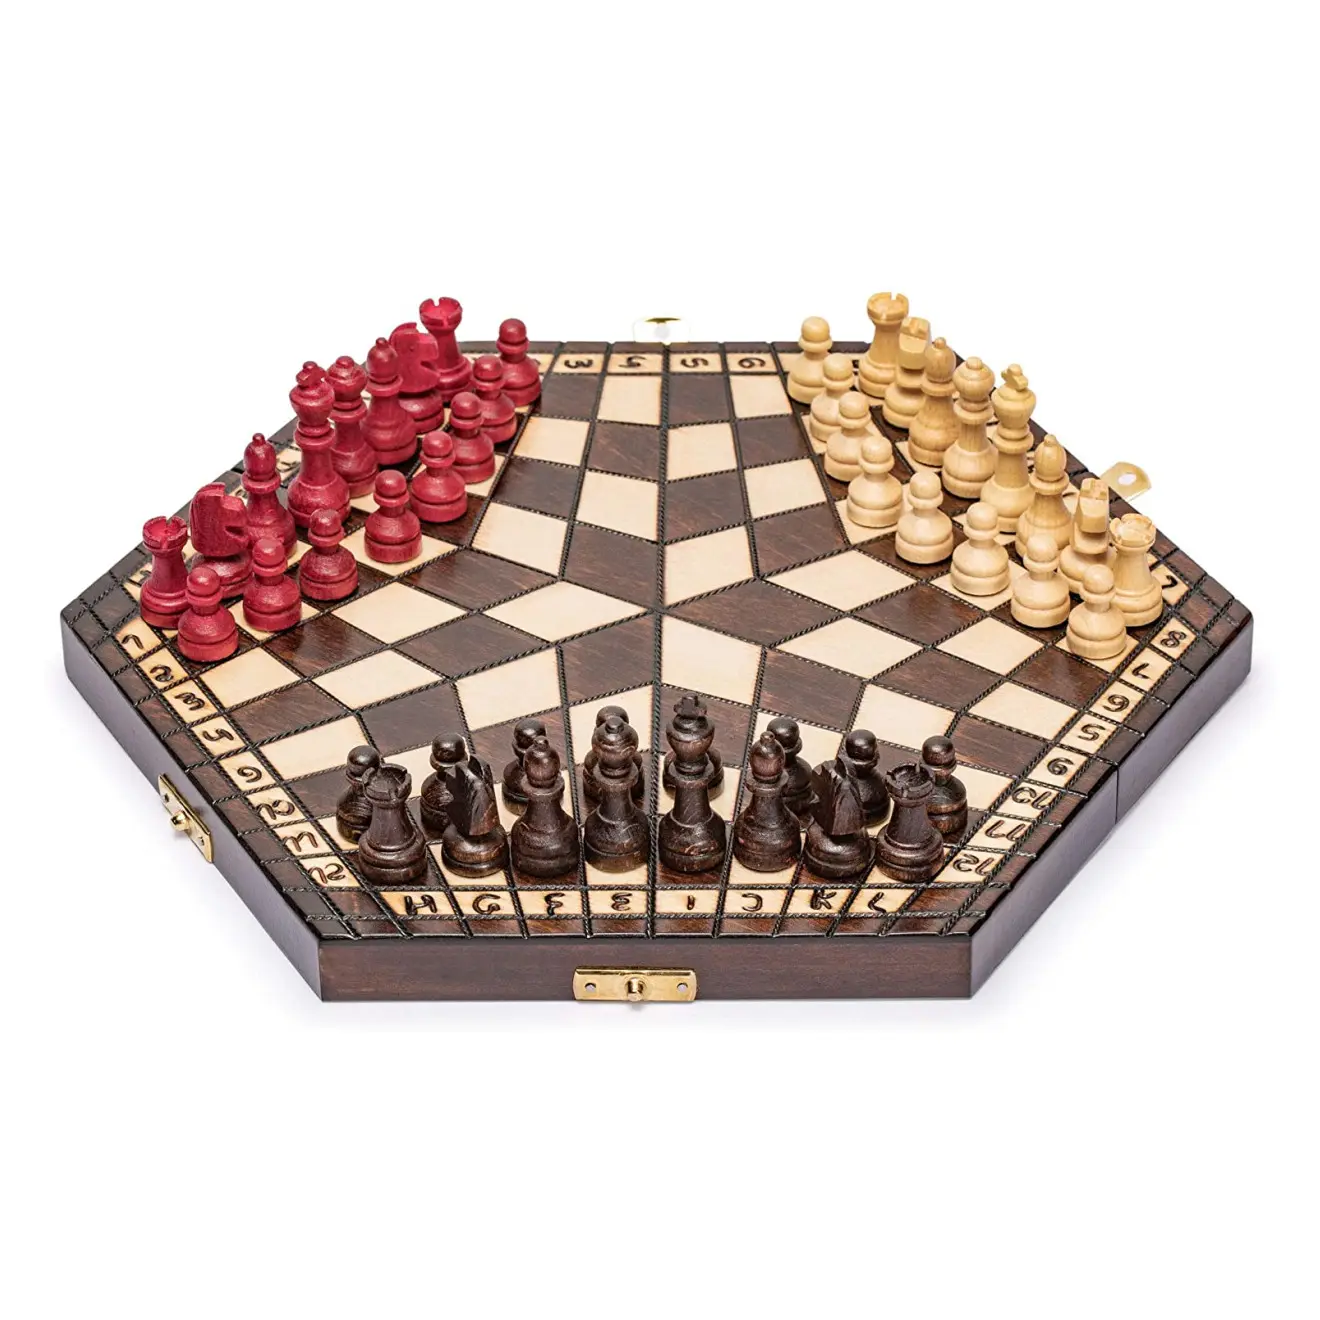 Juego de ajedrez vintage dgt clásico personalizado, tres jugadores, artesanías de madera, juego de mesa de ajedrez, caja de juegos